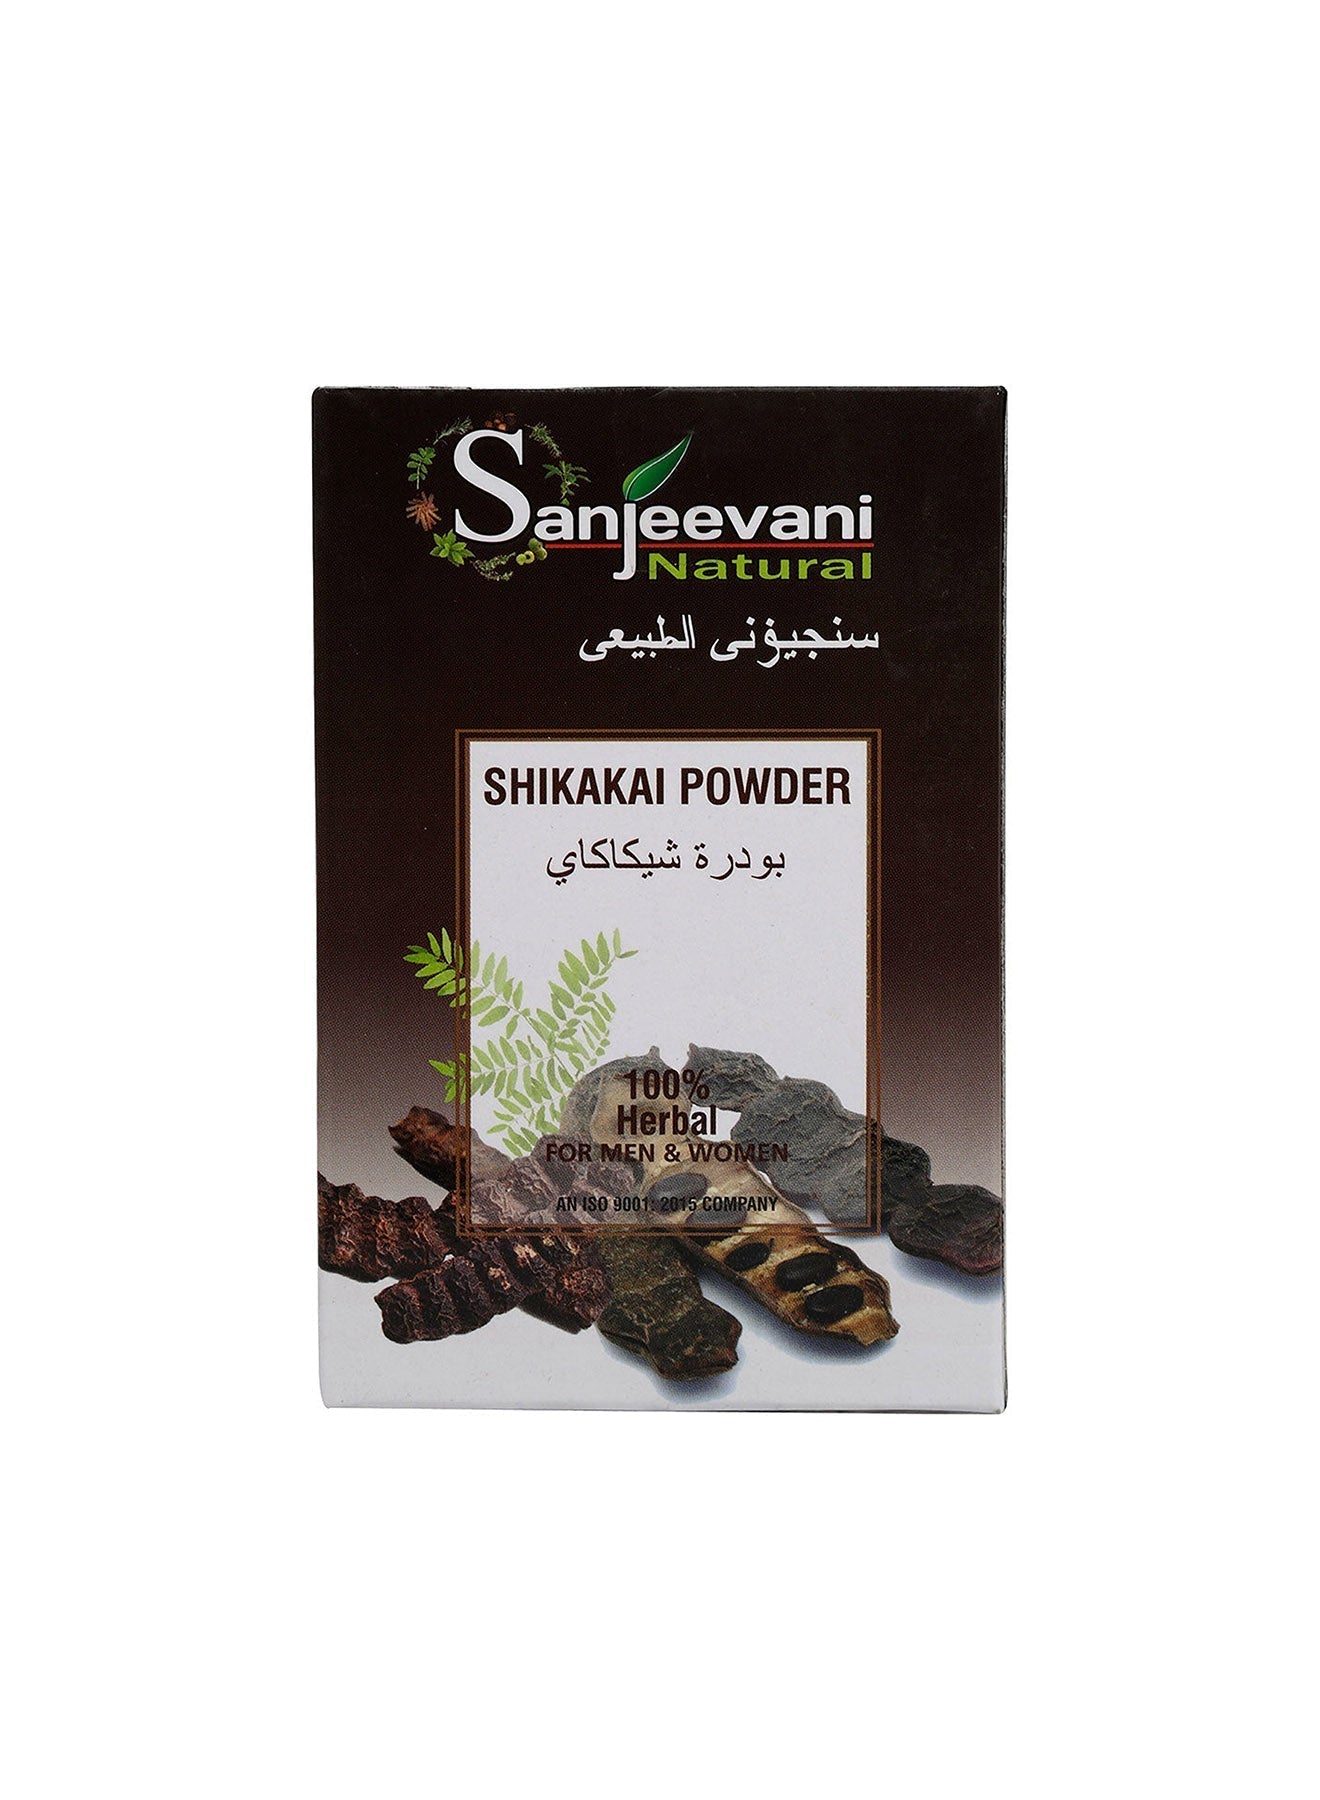 Sanjeevani Natural Shikakai Powder 100g Value Pack of 3 